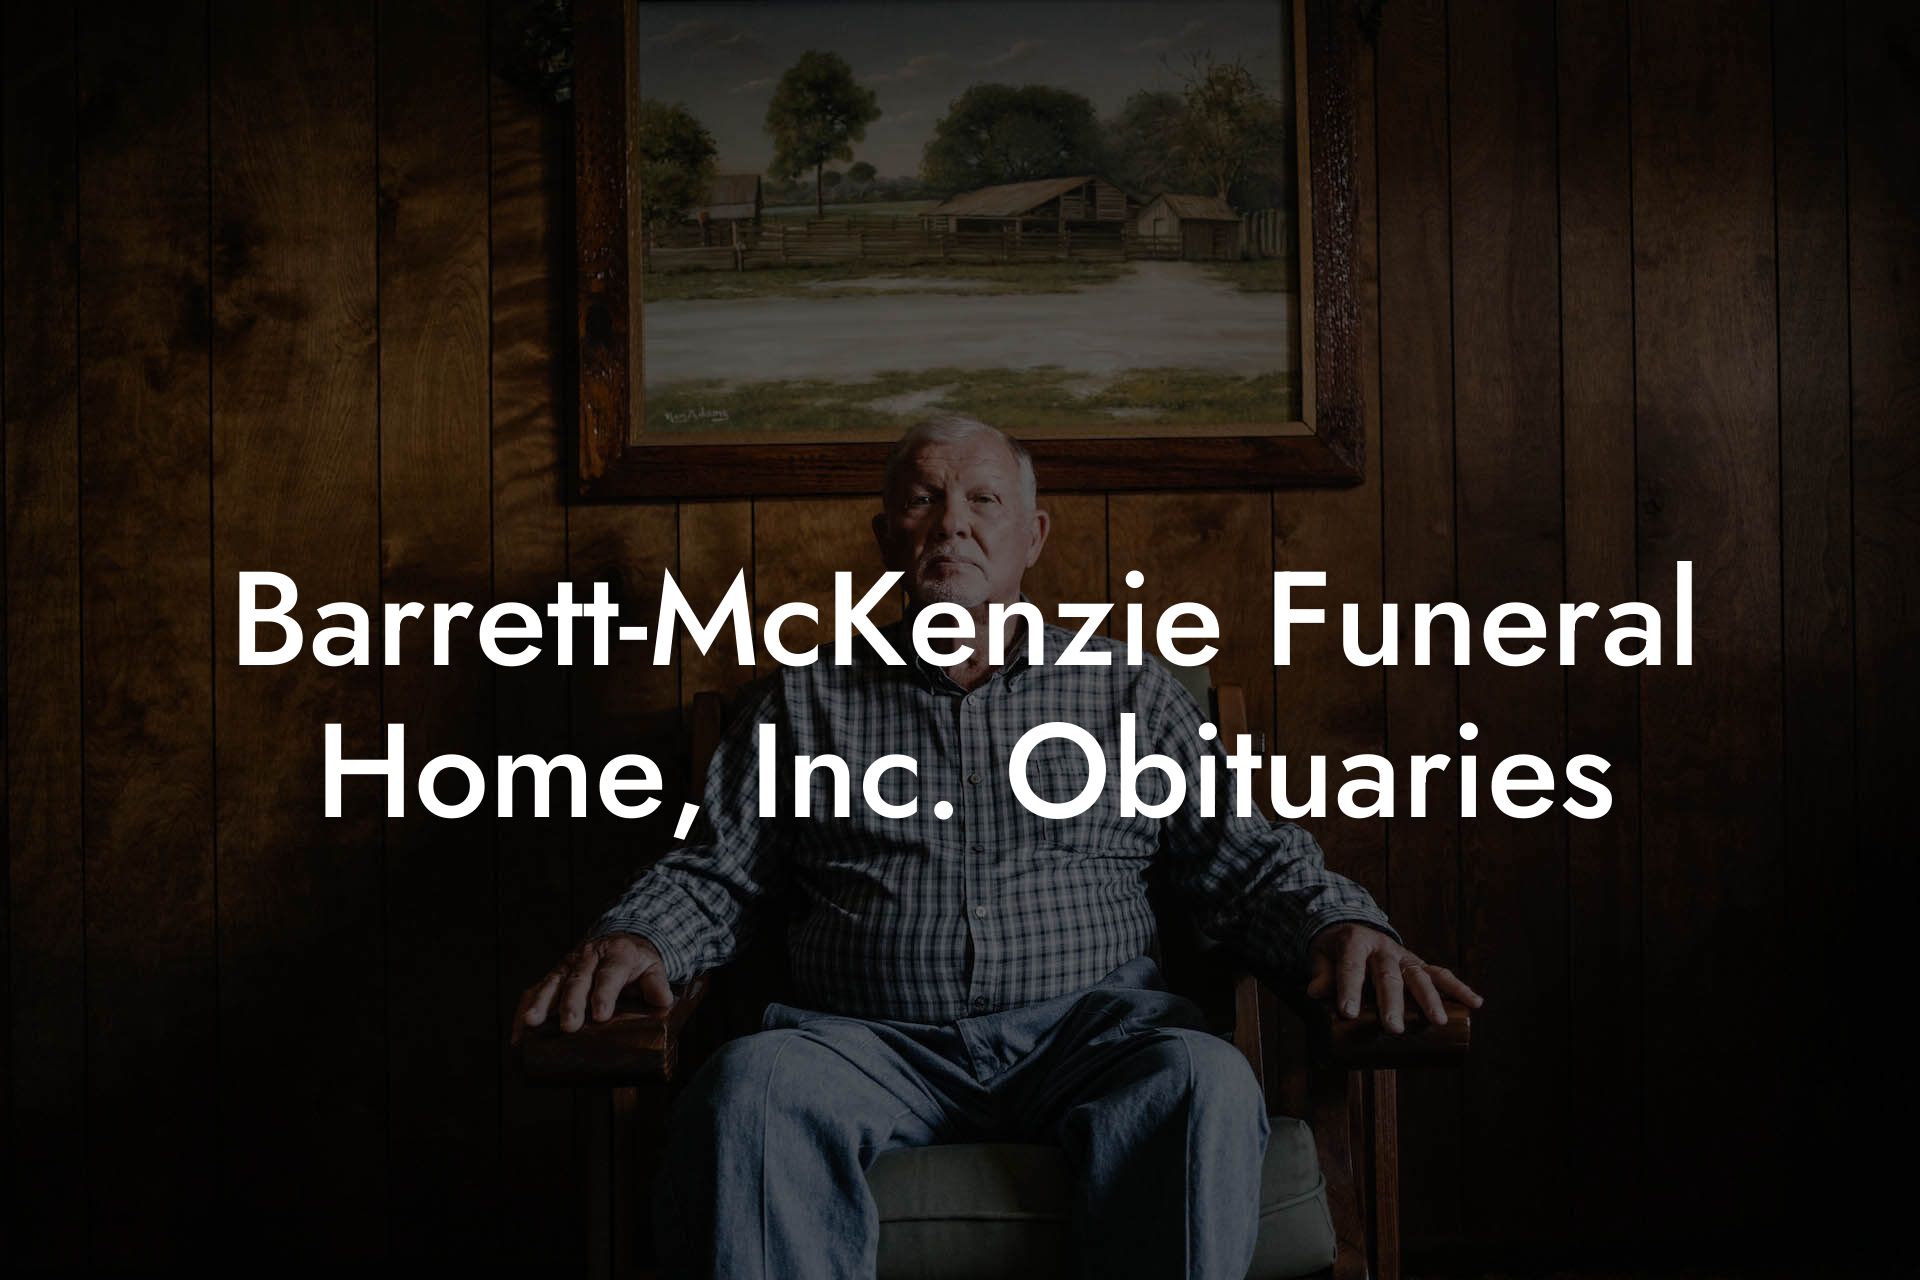 Barrett-McKenzie Funeral Home, Inc. Obituaries